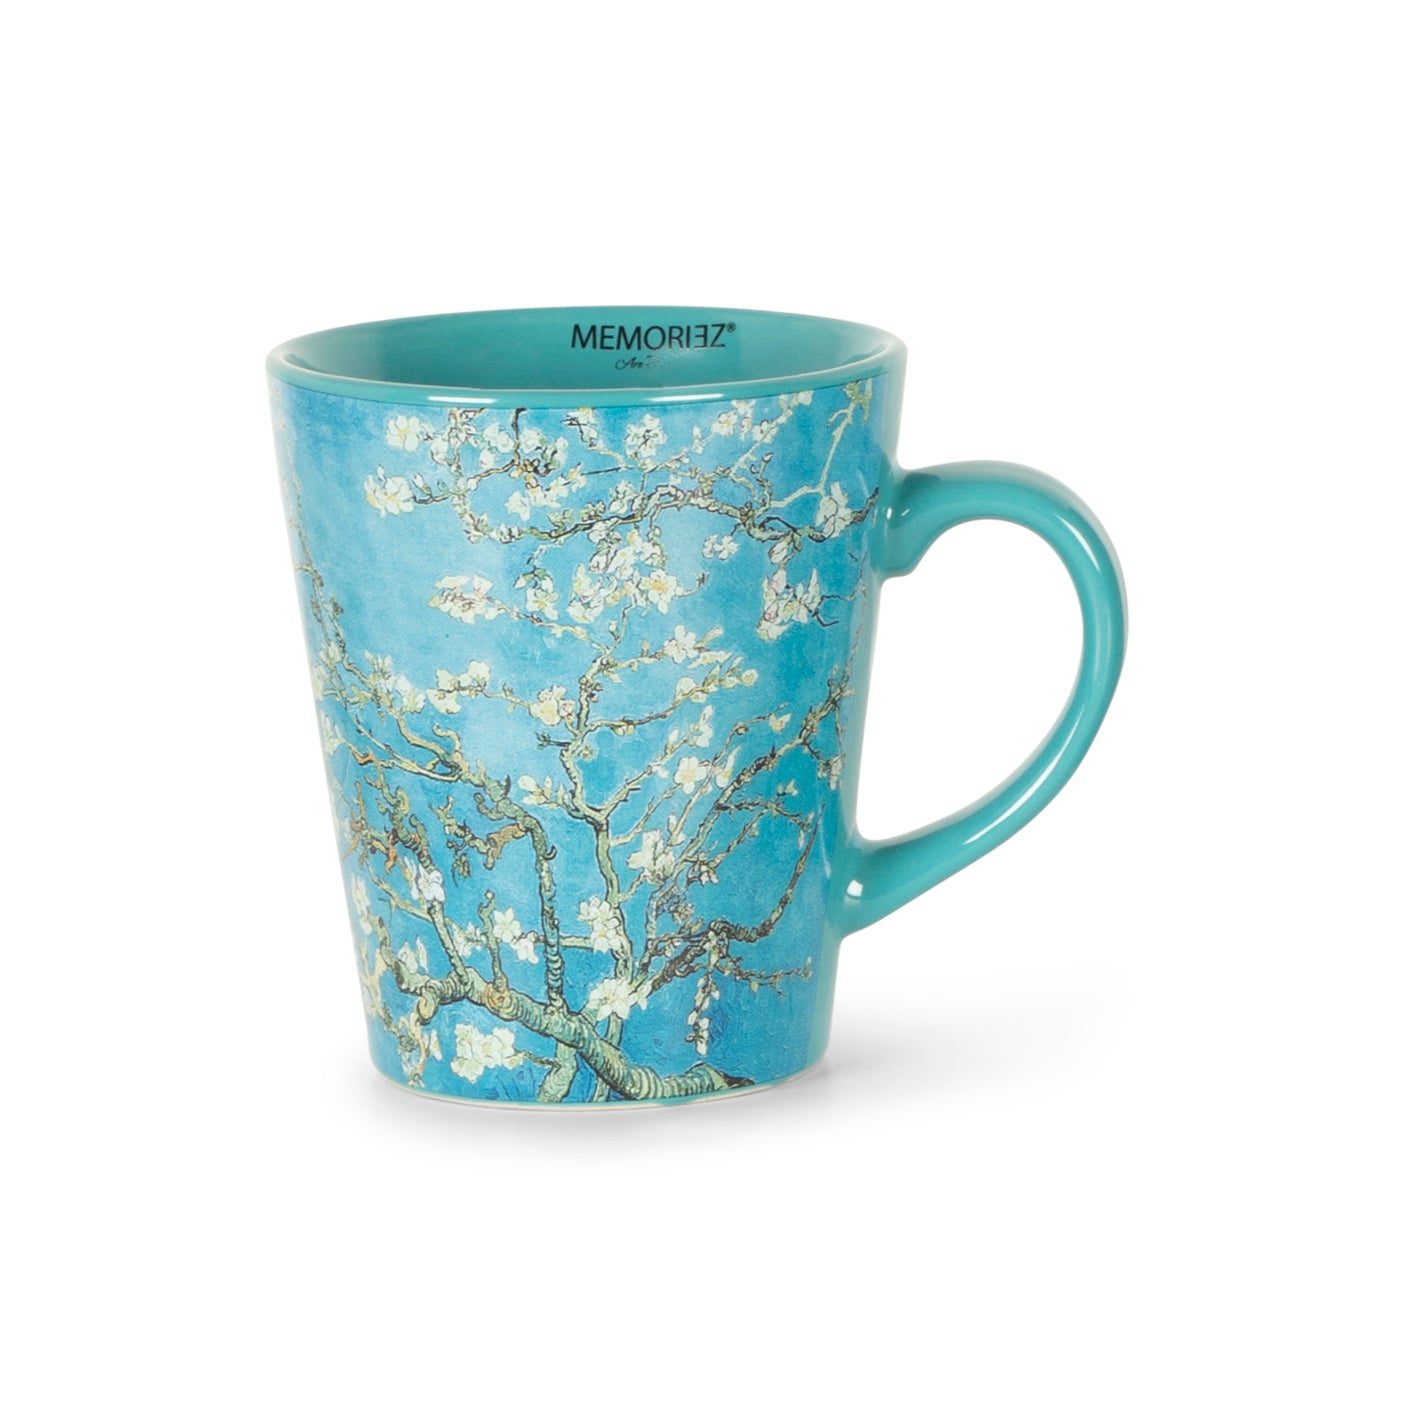 V-shape mug - Blossom - van Gogh